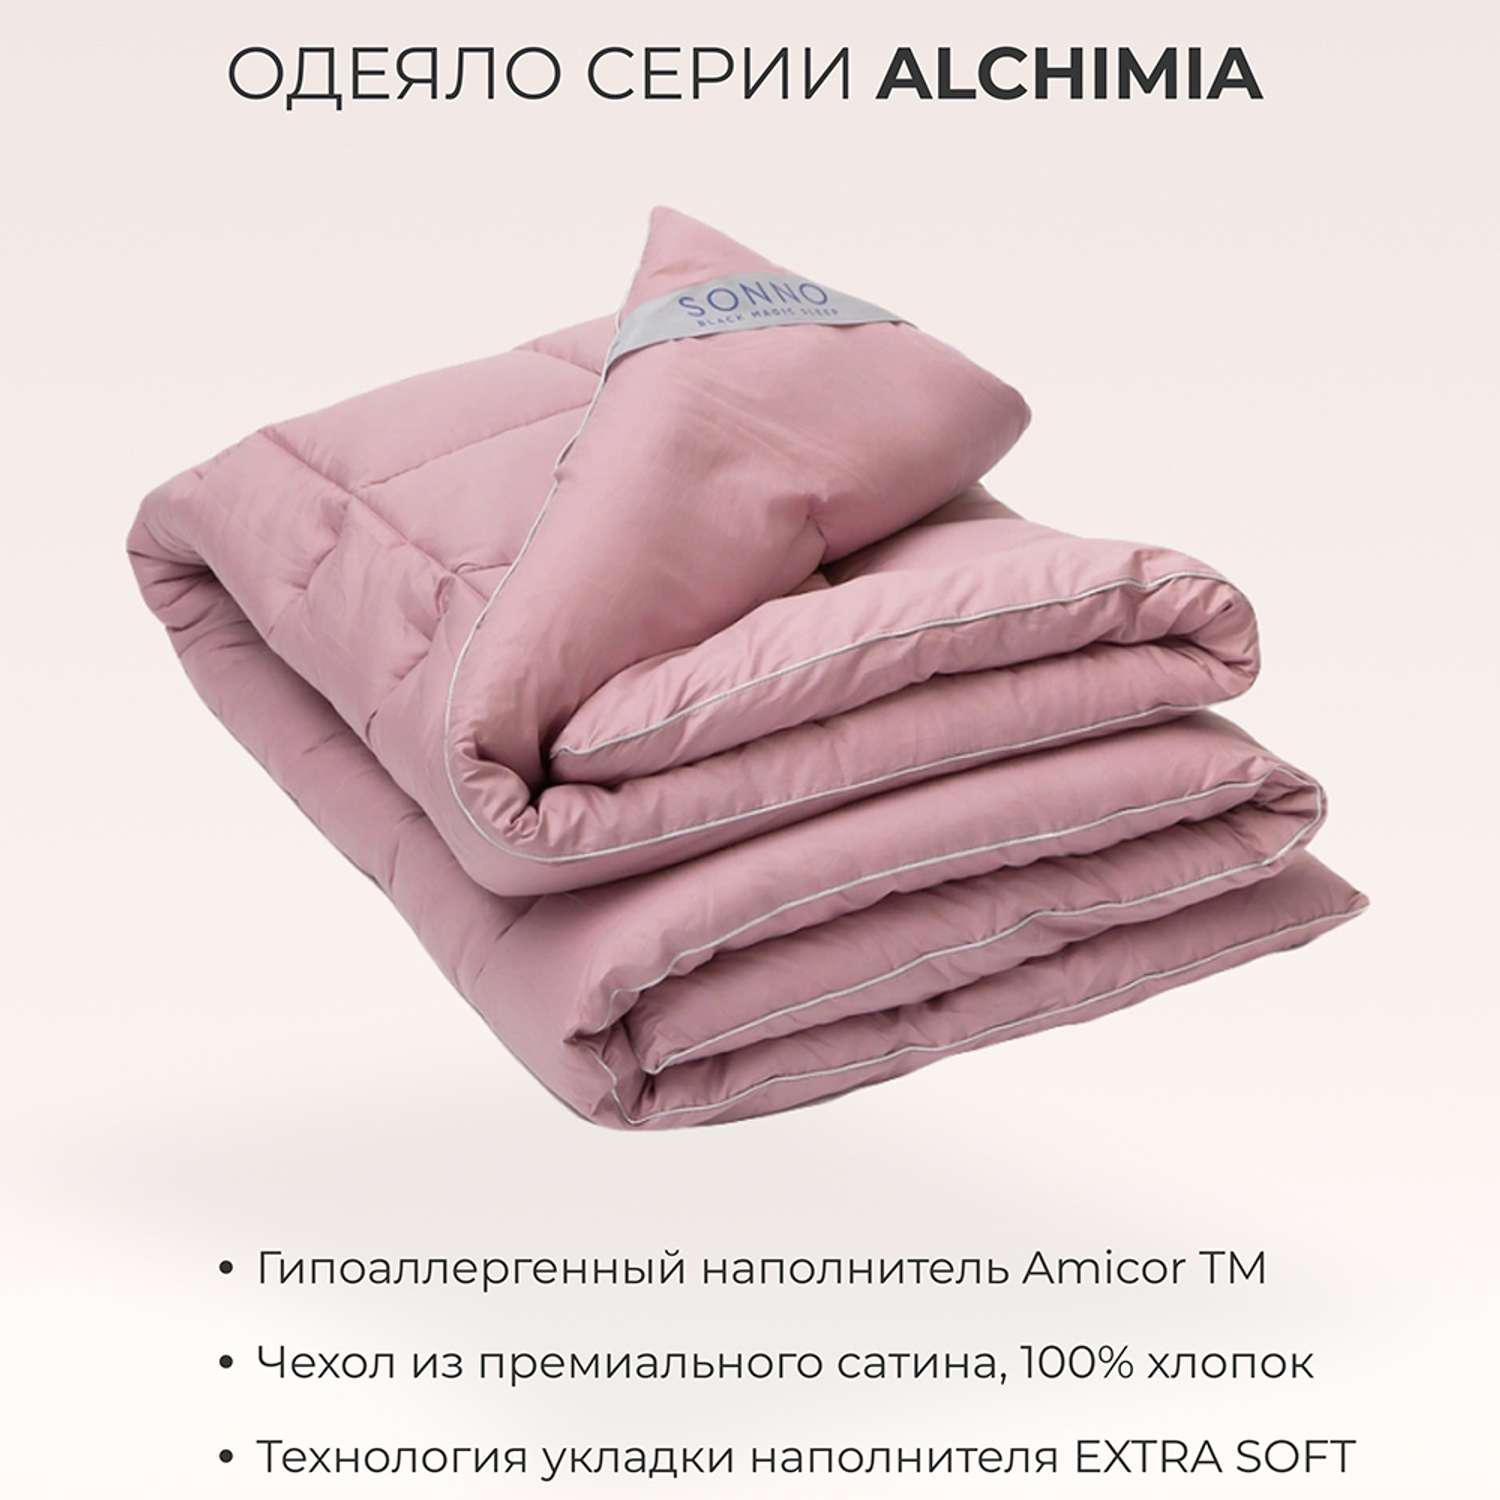 Одеяло SONNO ALCHIMIA 1.5 спальный 140x205 всесезонное с наполнителем Amicor розовый - фото 2